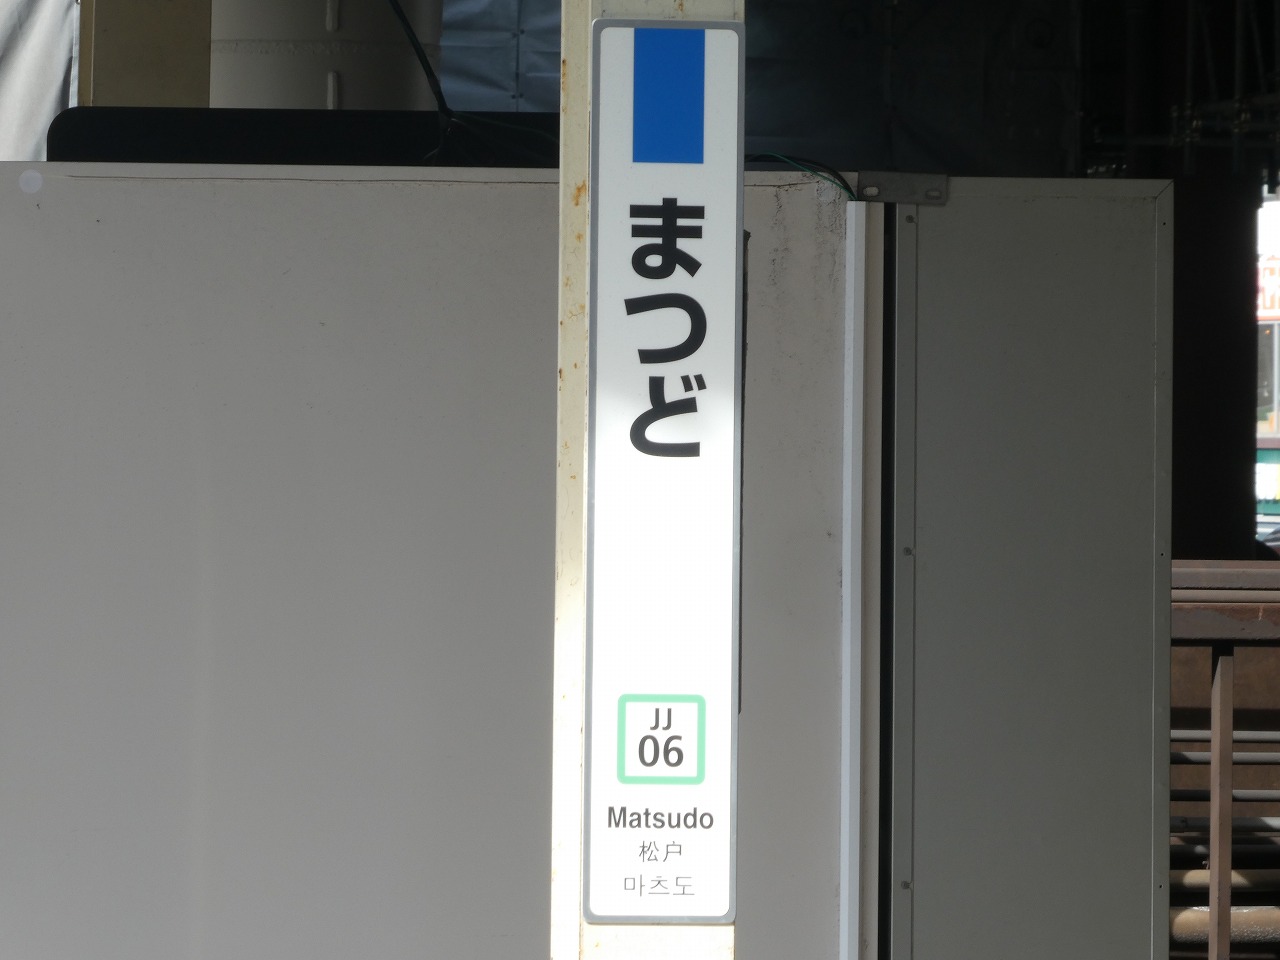 縦型の駅名標・常磐線快速